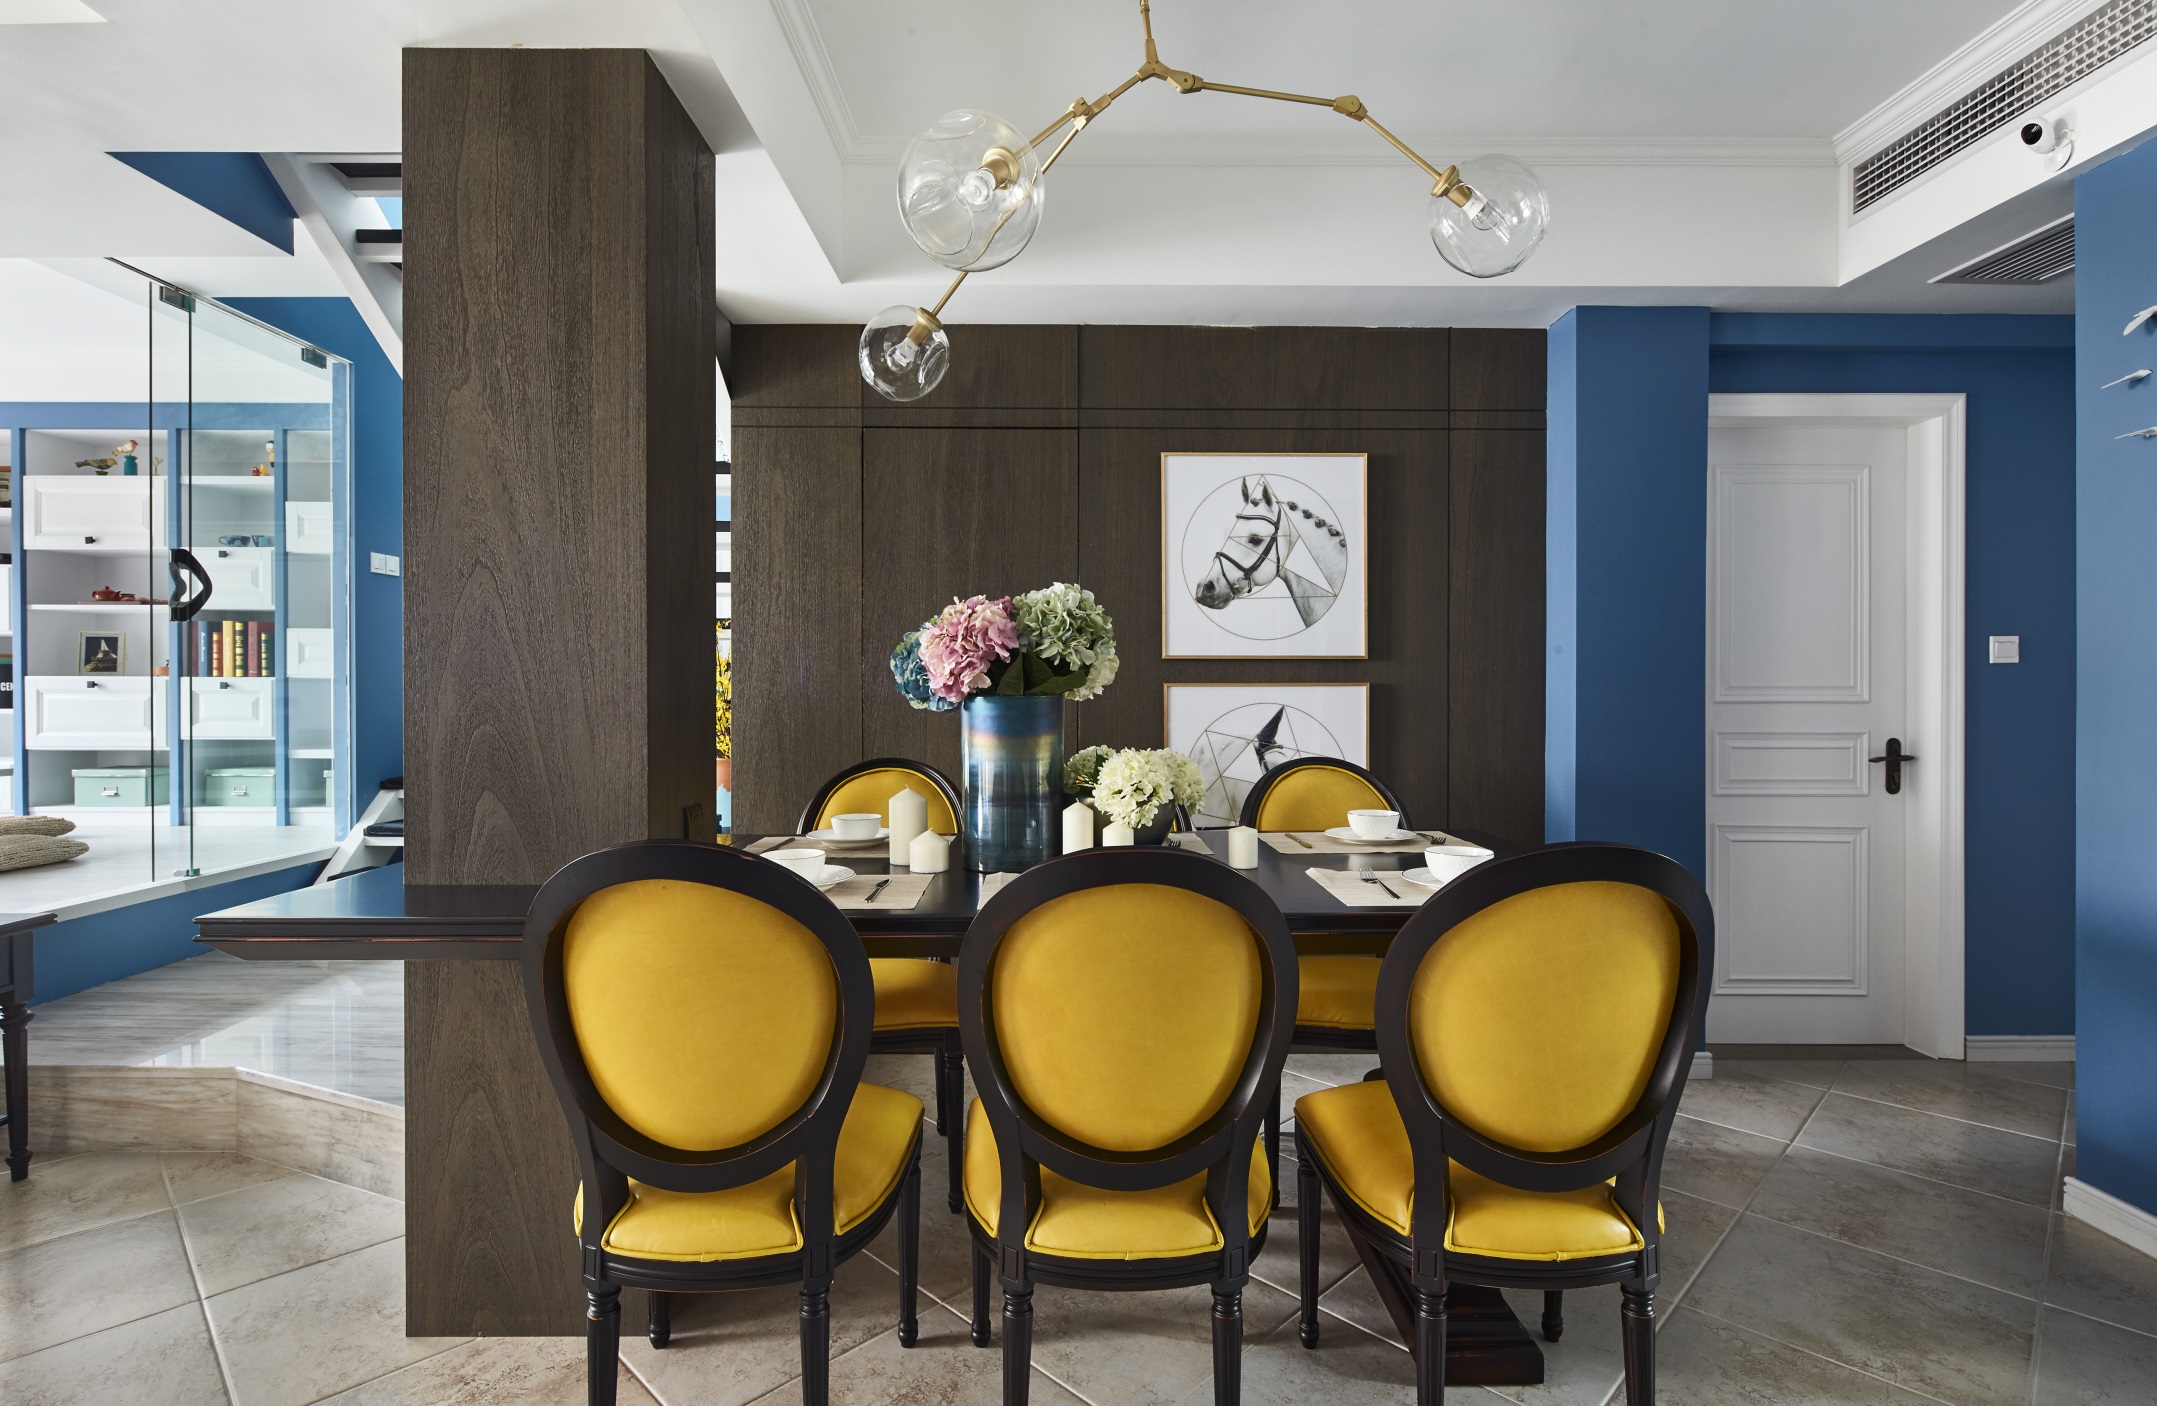 褐色木质餐桌搭配黄色餐椅，彰显欧式风格家具品味，分子结构灯饰与艺术挂画相辅相成。